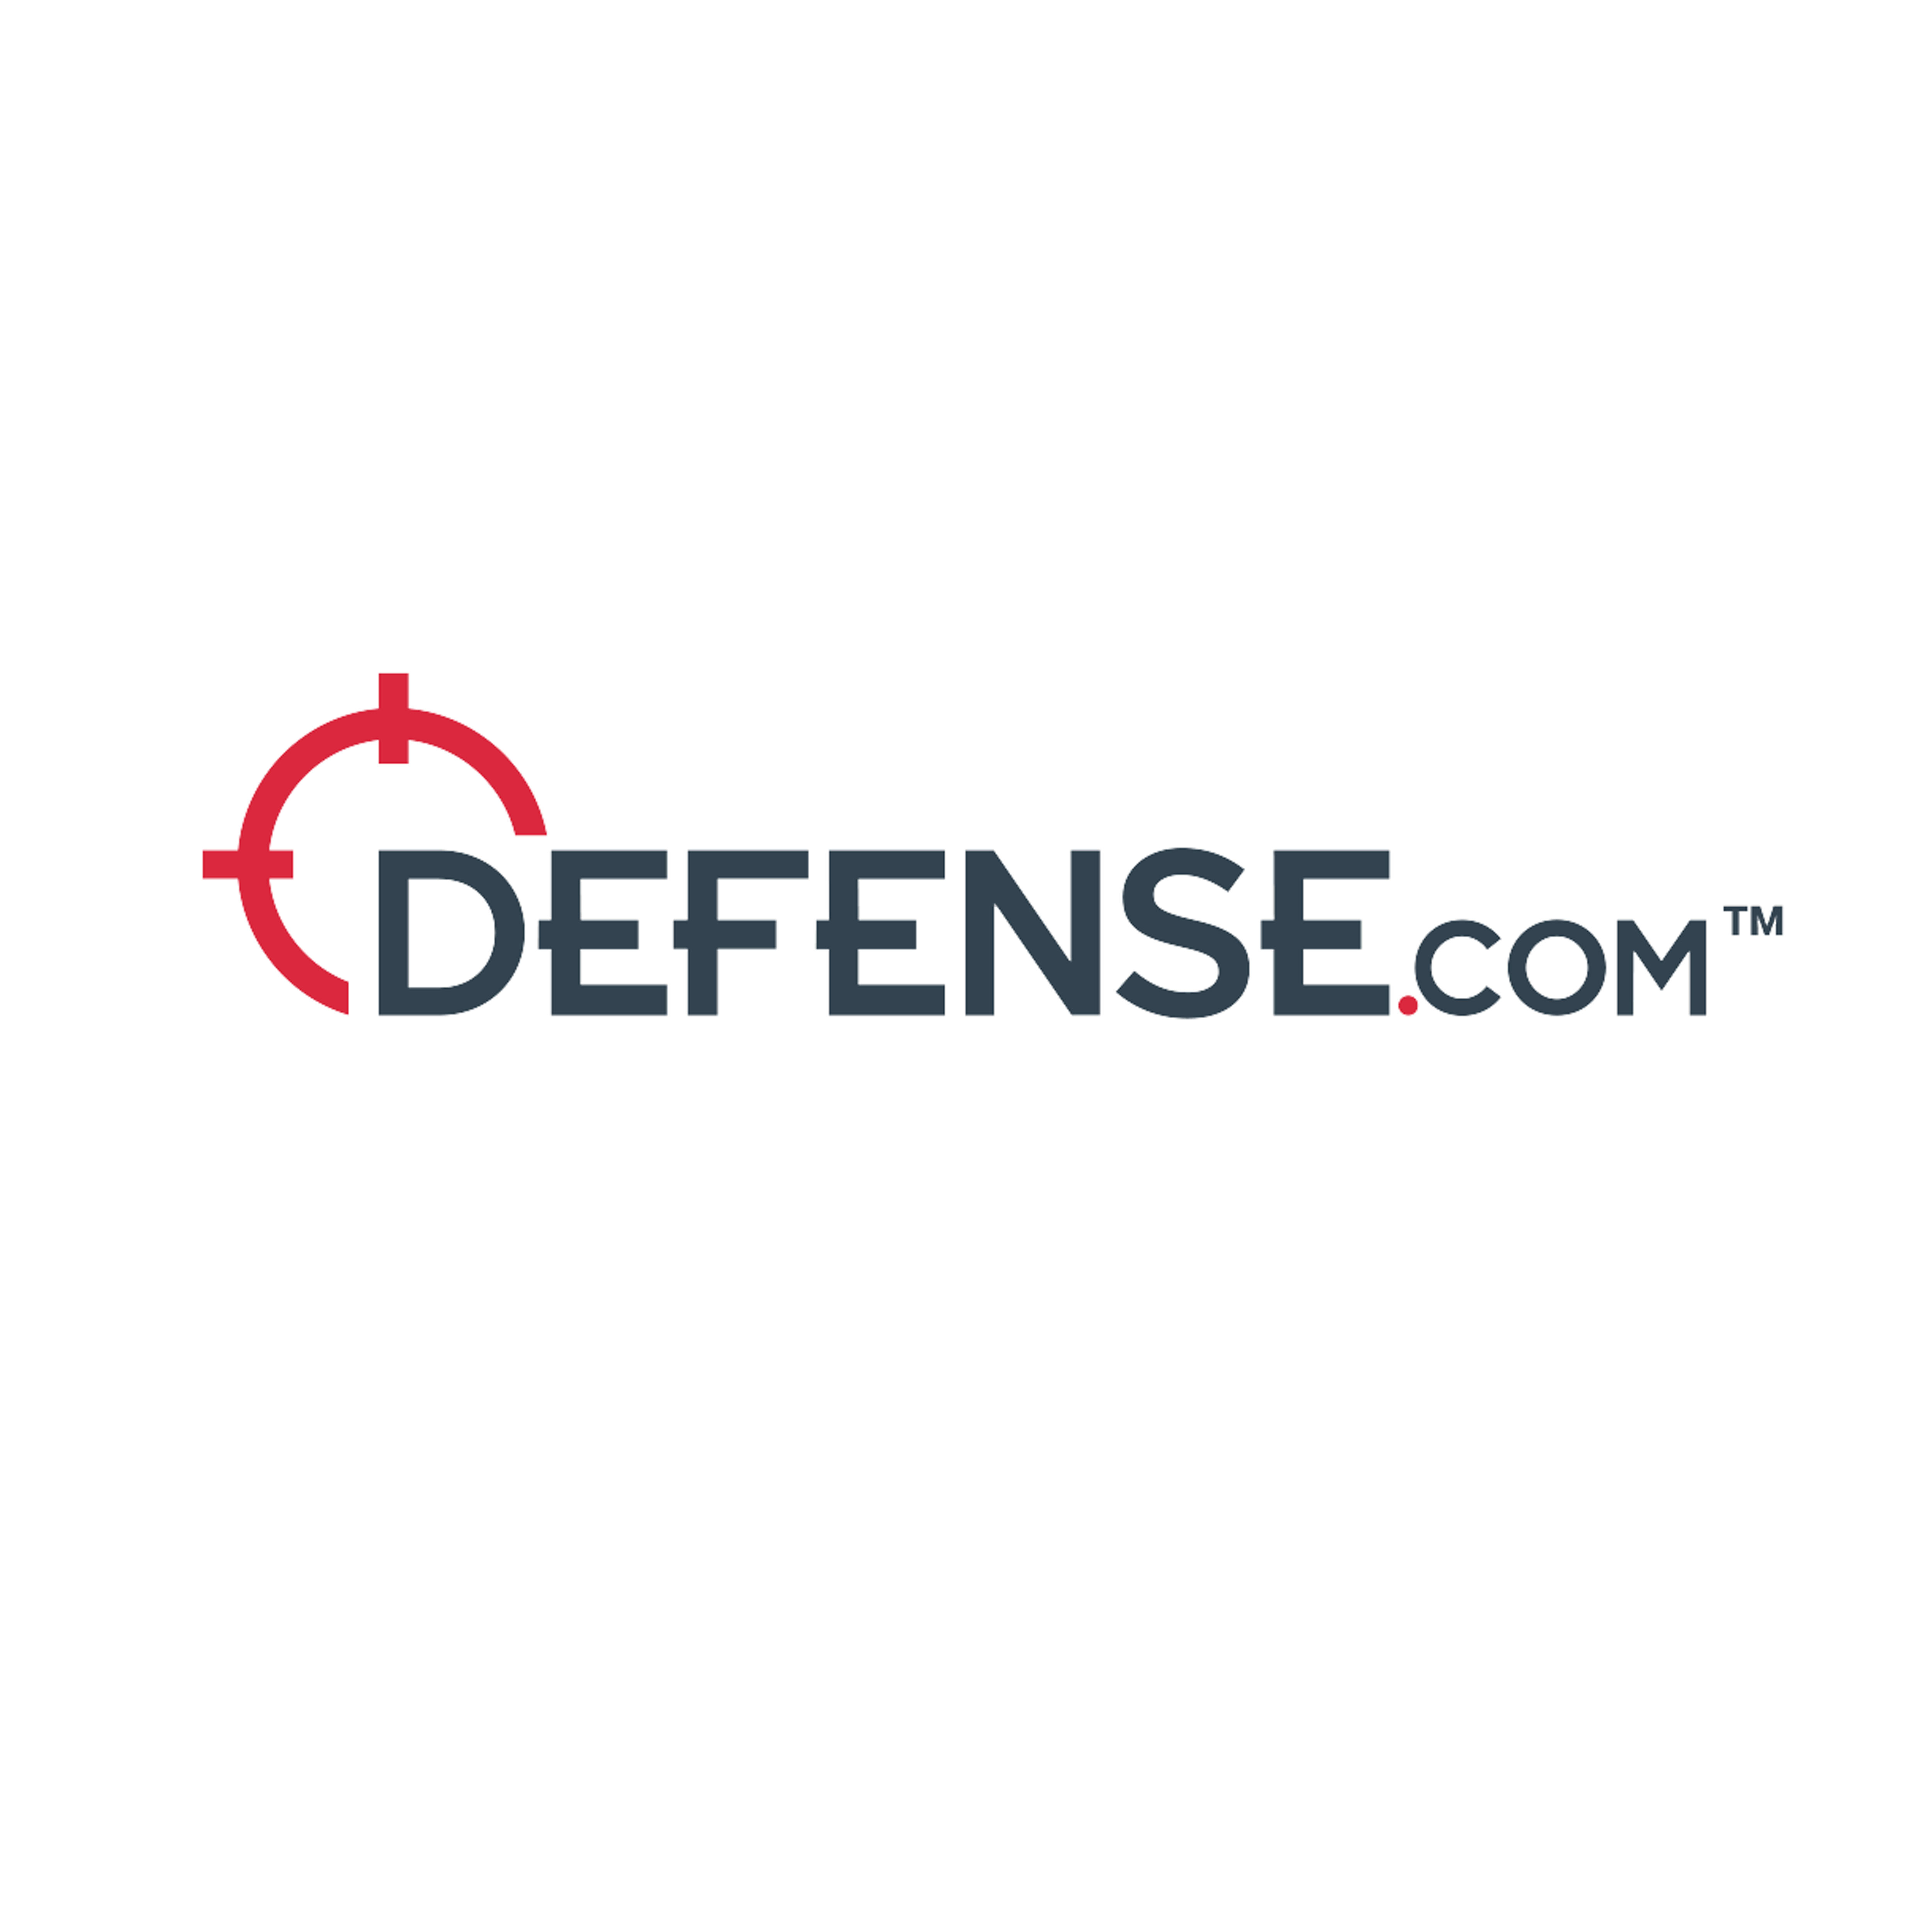 Defense.com